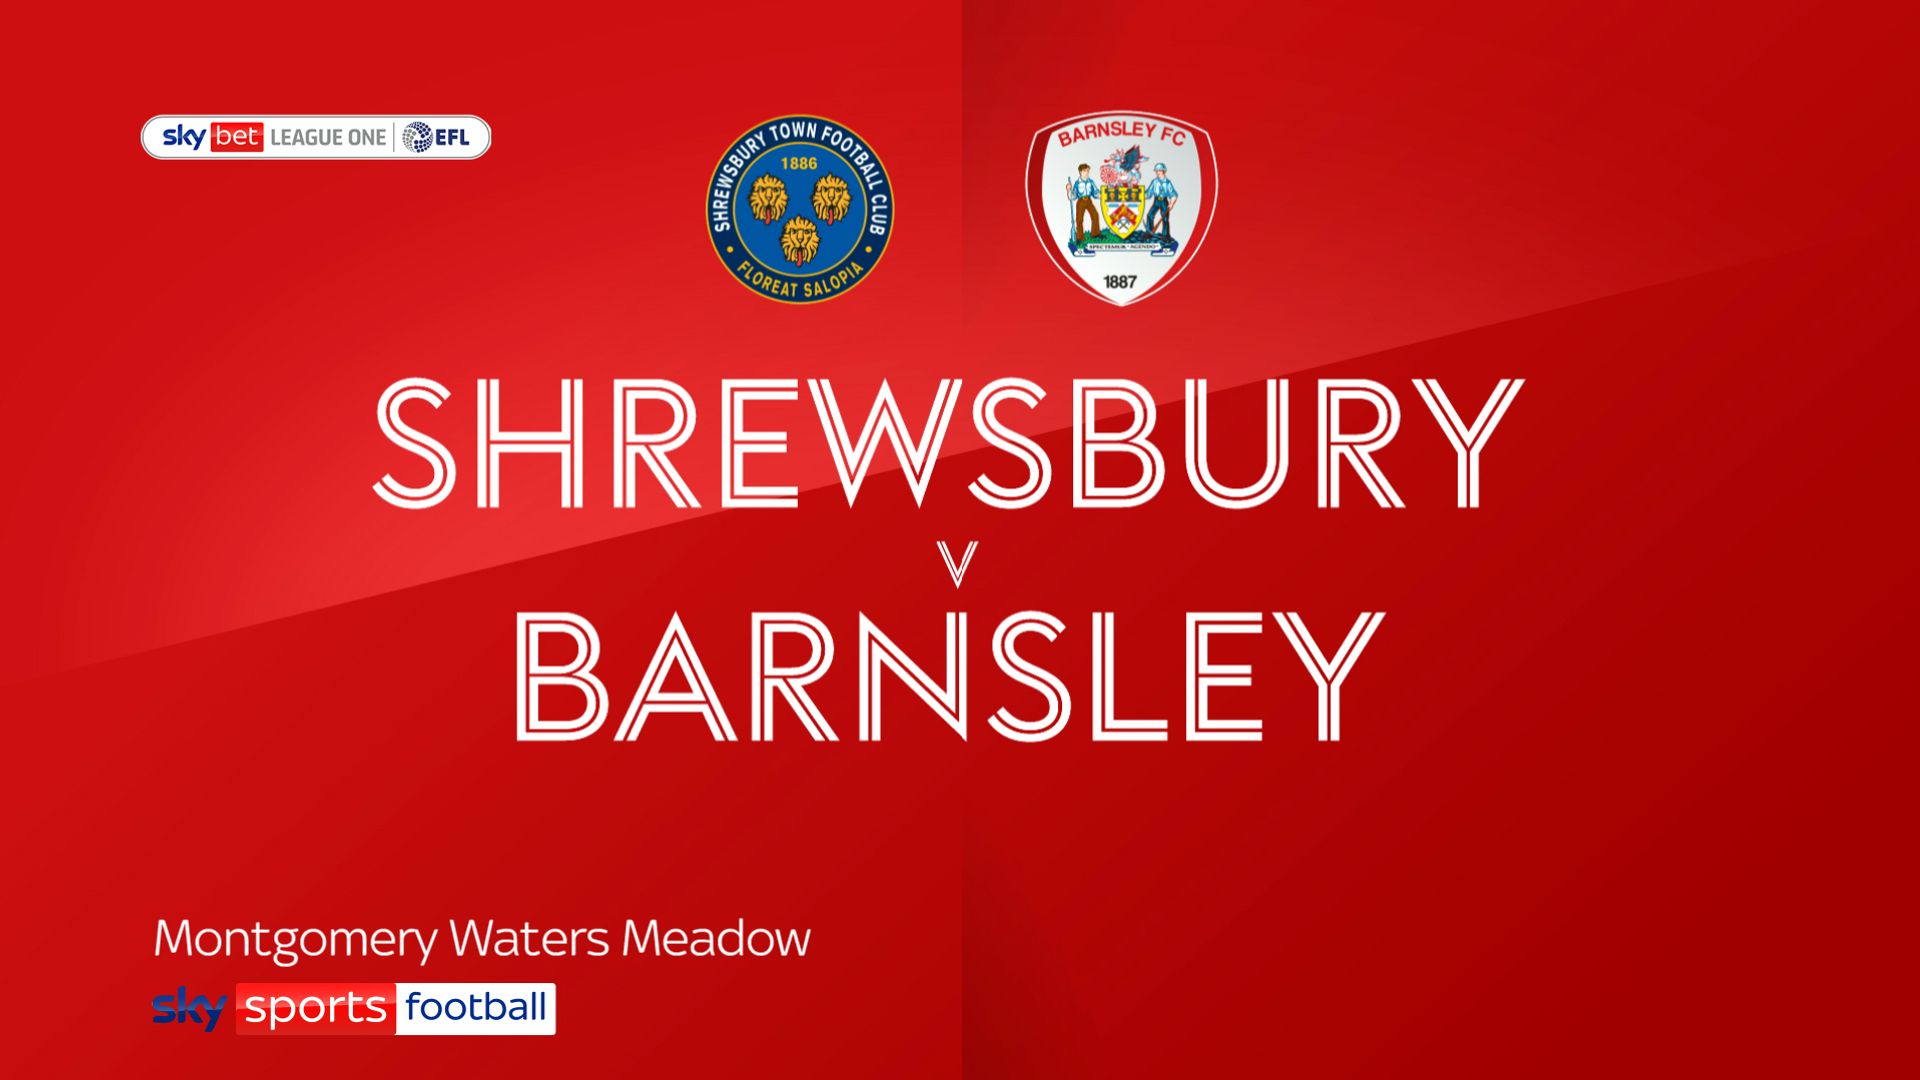 Barnsley add third consecutive win at Shrewsbury